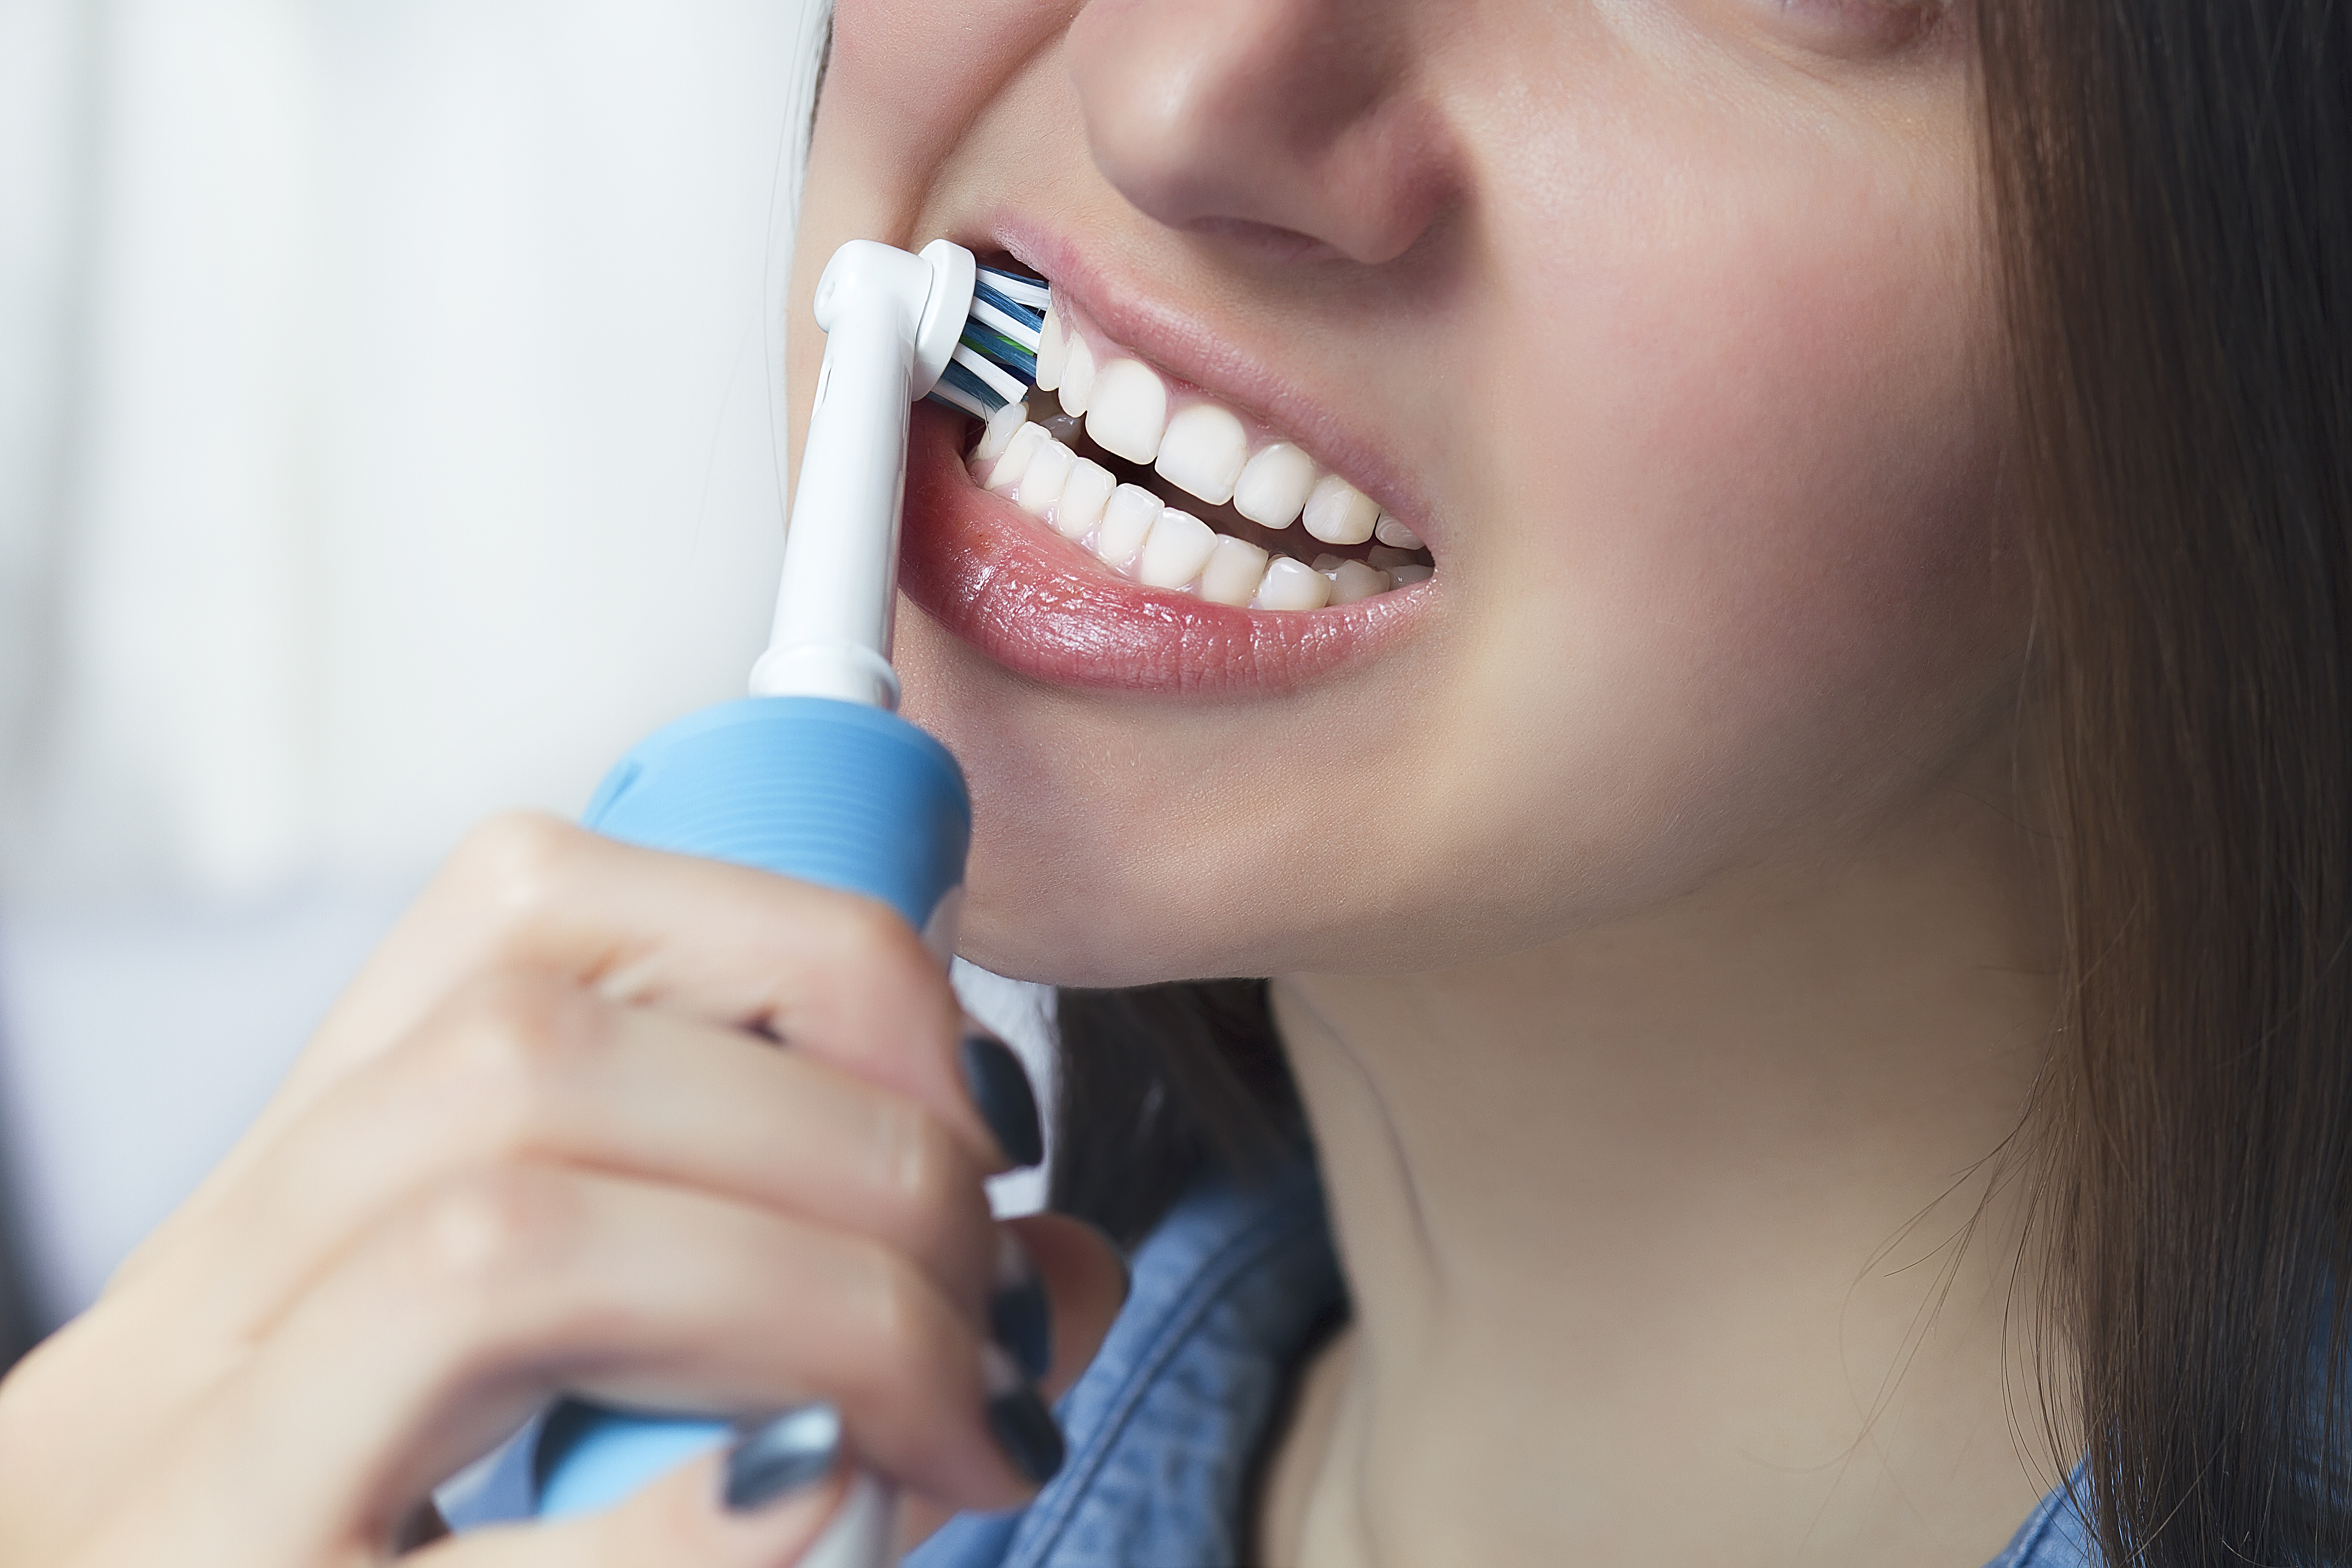 Manual vs. eléctrico: ¿cuál es el mejor cepillo de dientes? - BBC News Mundo